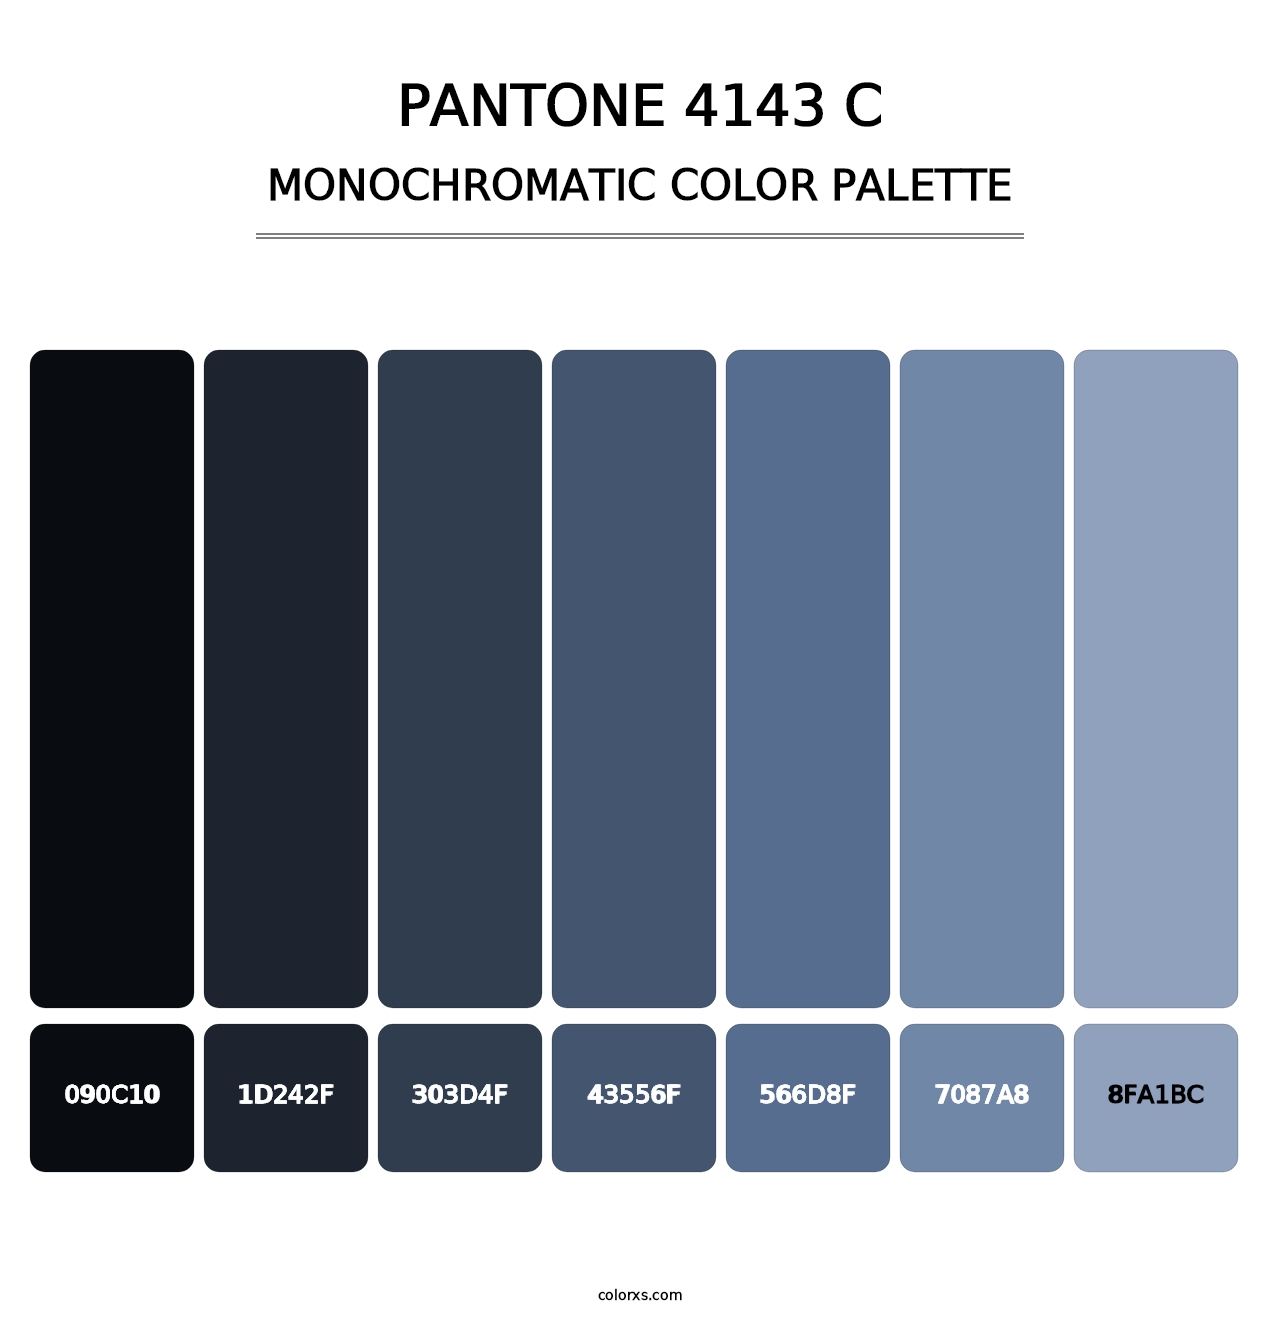 PANTONE 4143 C - Monochromatic Color Palette